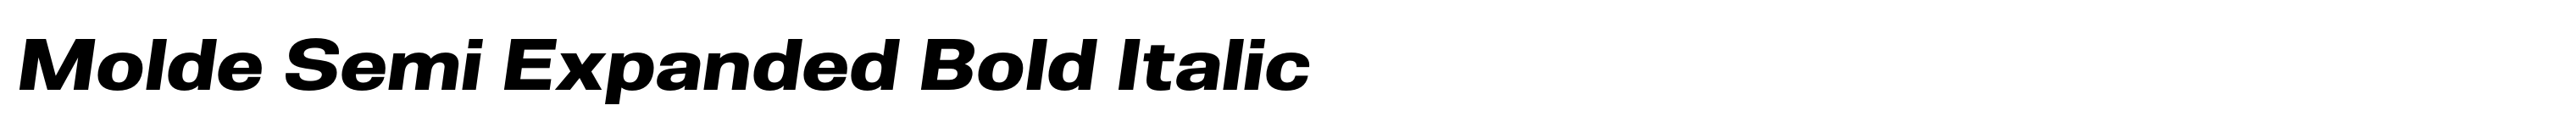 Molde Semi Expanded Bold Italic